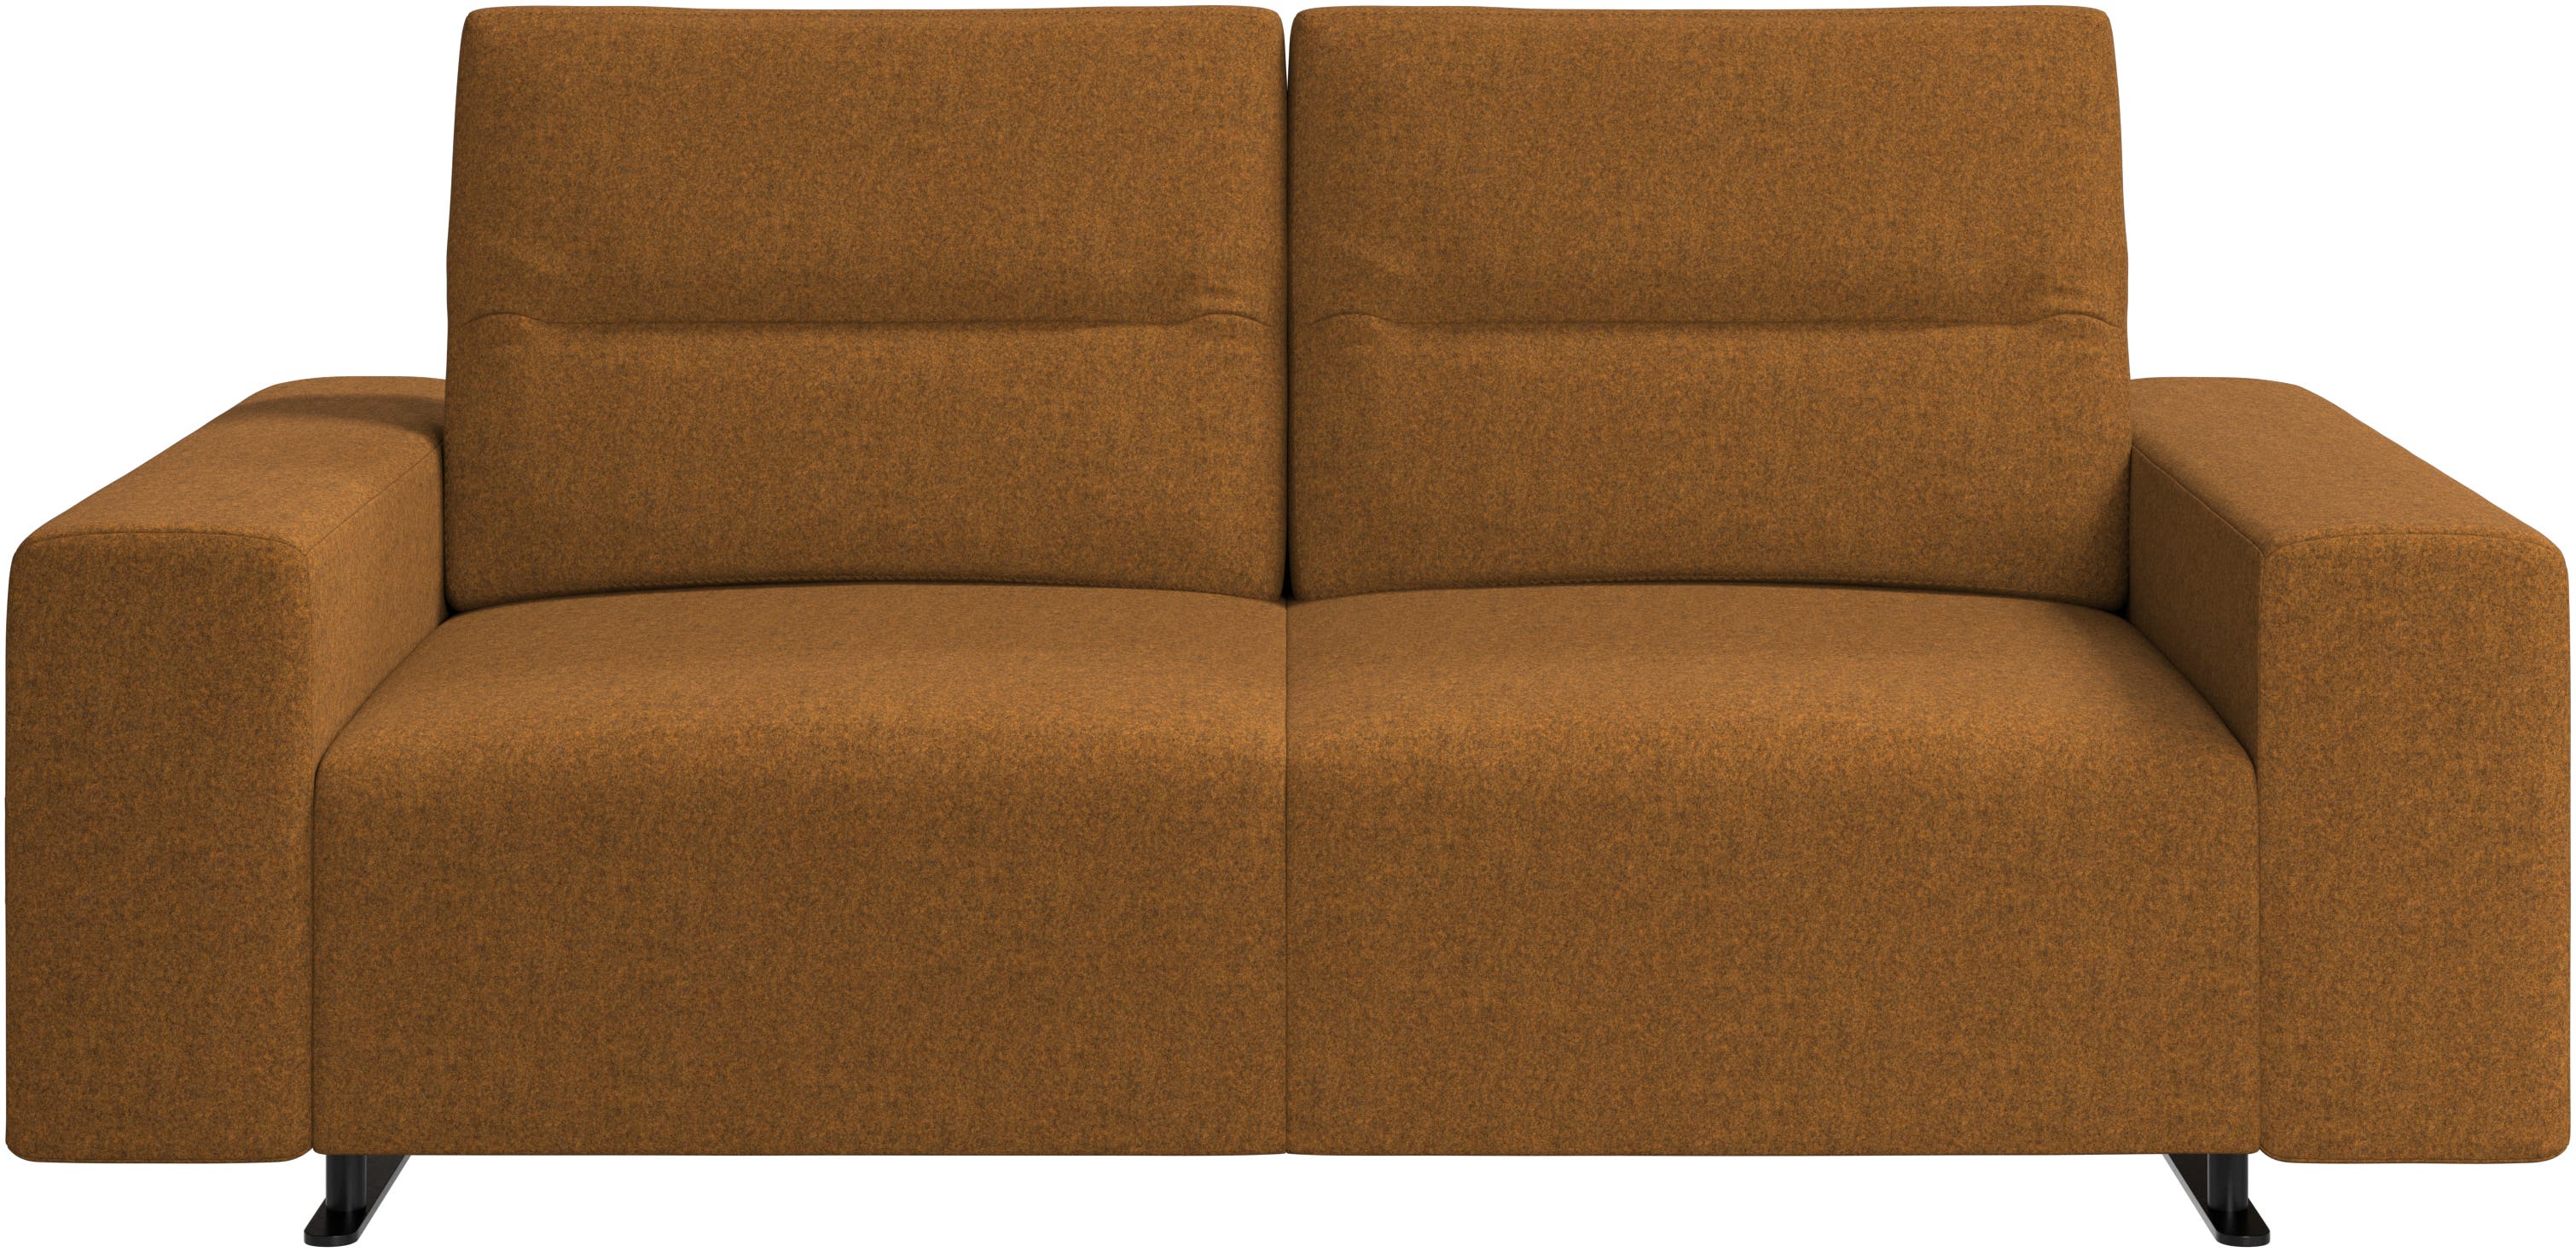 Hampton Sofa mit verstellbarer Rückenlehne und Stauraum auf der rechten Seite